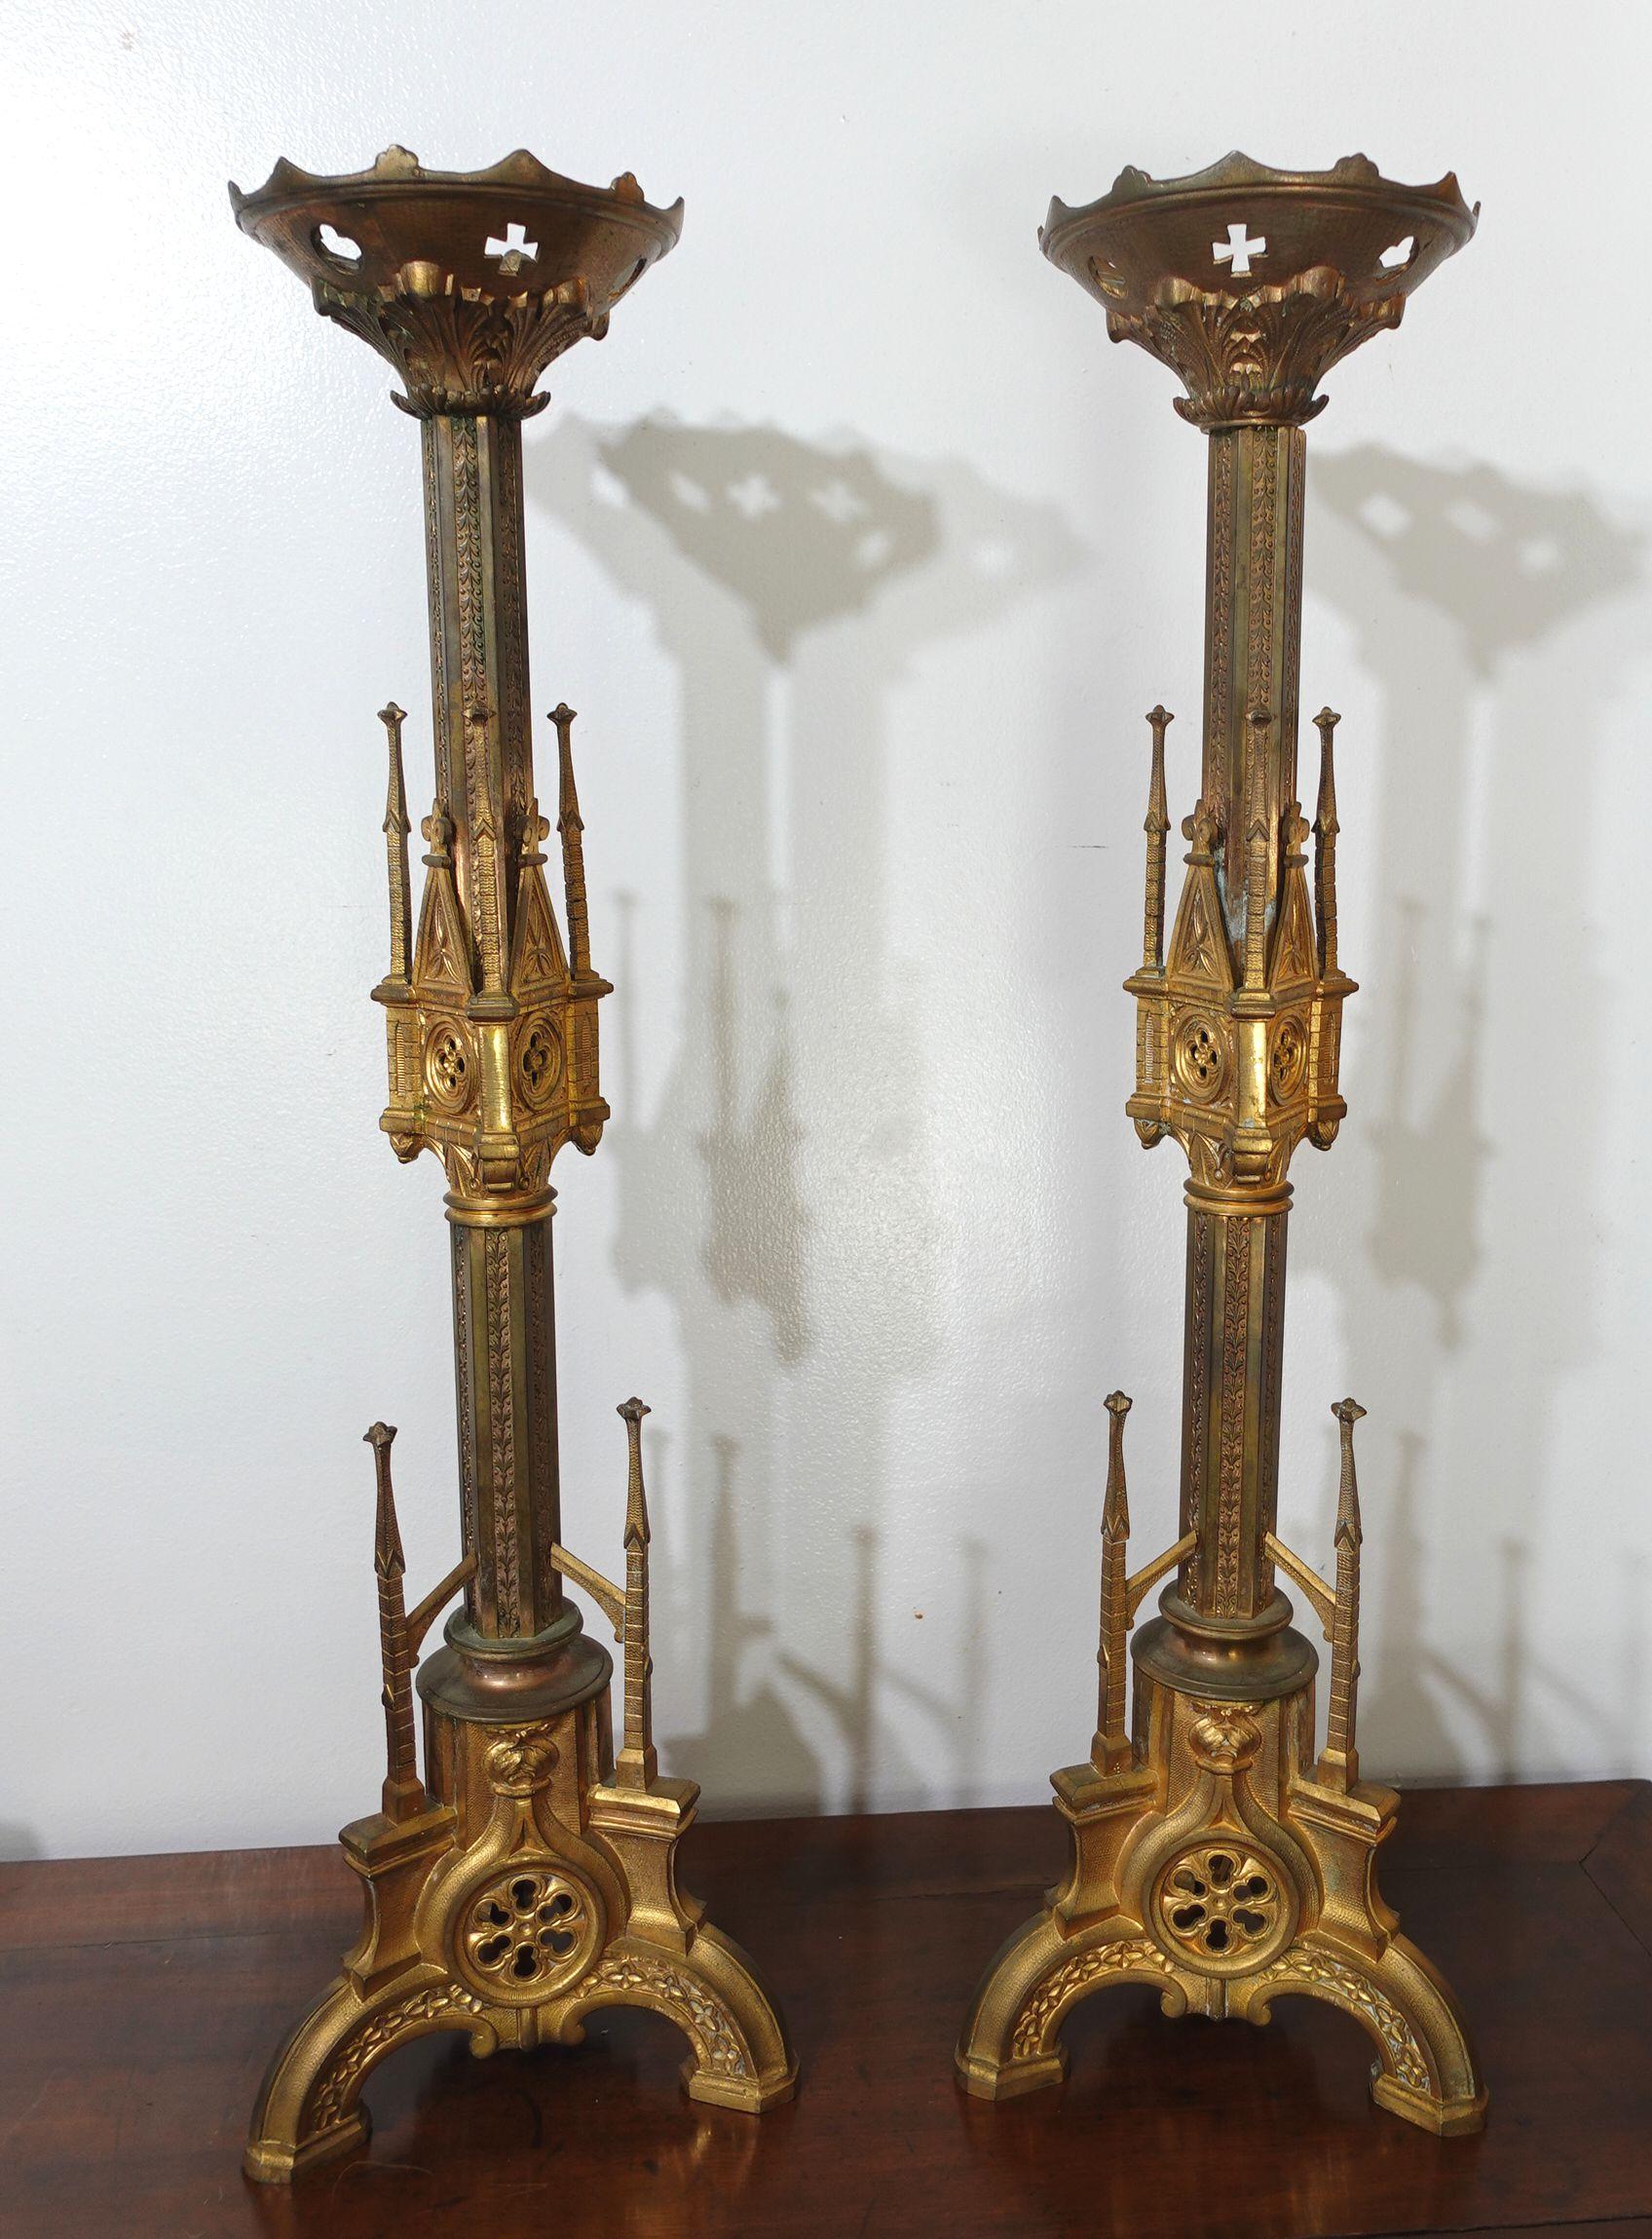 Großes antikes Paar gotischer Kathedralen-Motive aus Messing - Church's/Altar-Kerzenhalter mit gotischen architektonischen Designelementen.
Ric.0043.
   